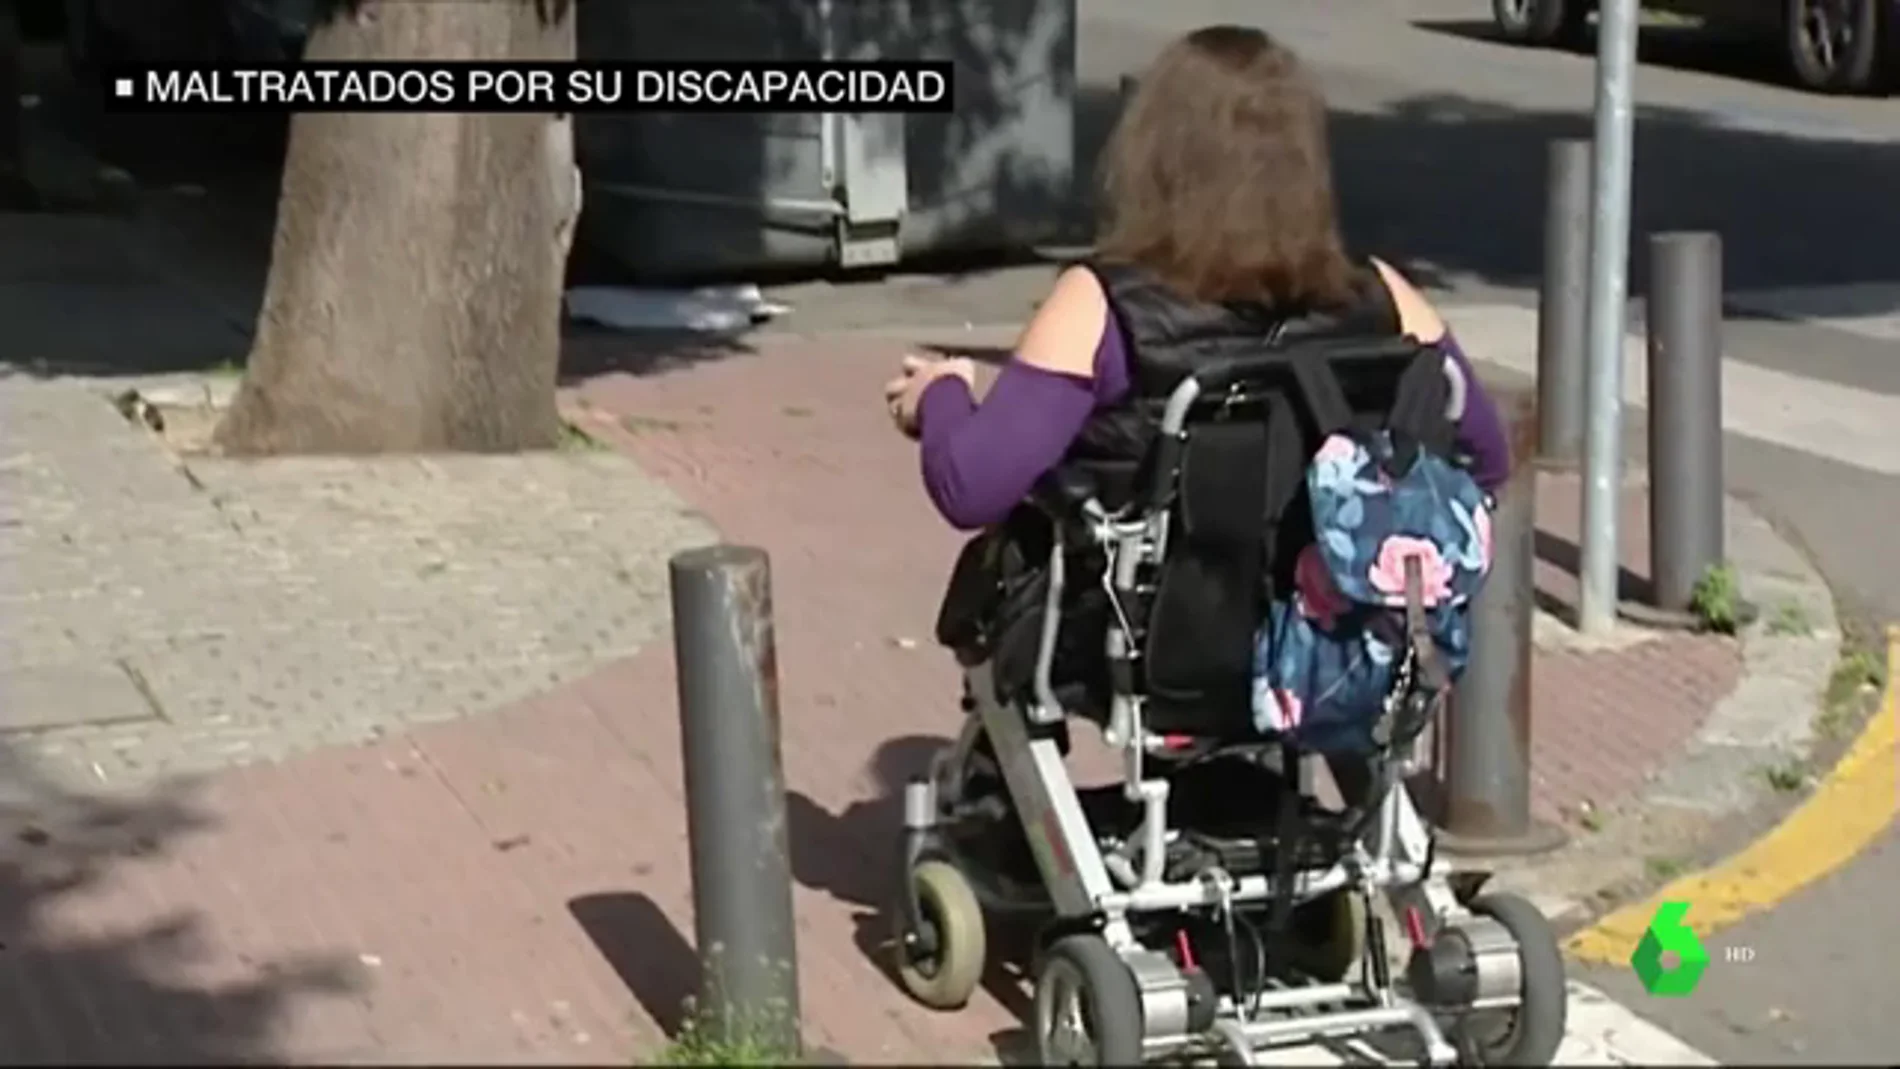 Insultos y falta de empatía: la realidad a la que se enfrentan las personas con discapacidad en los transportes